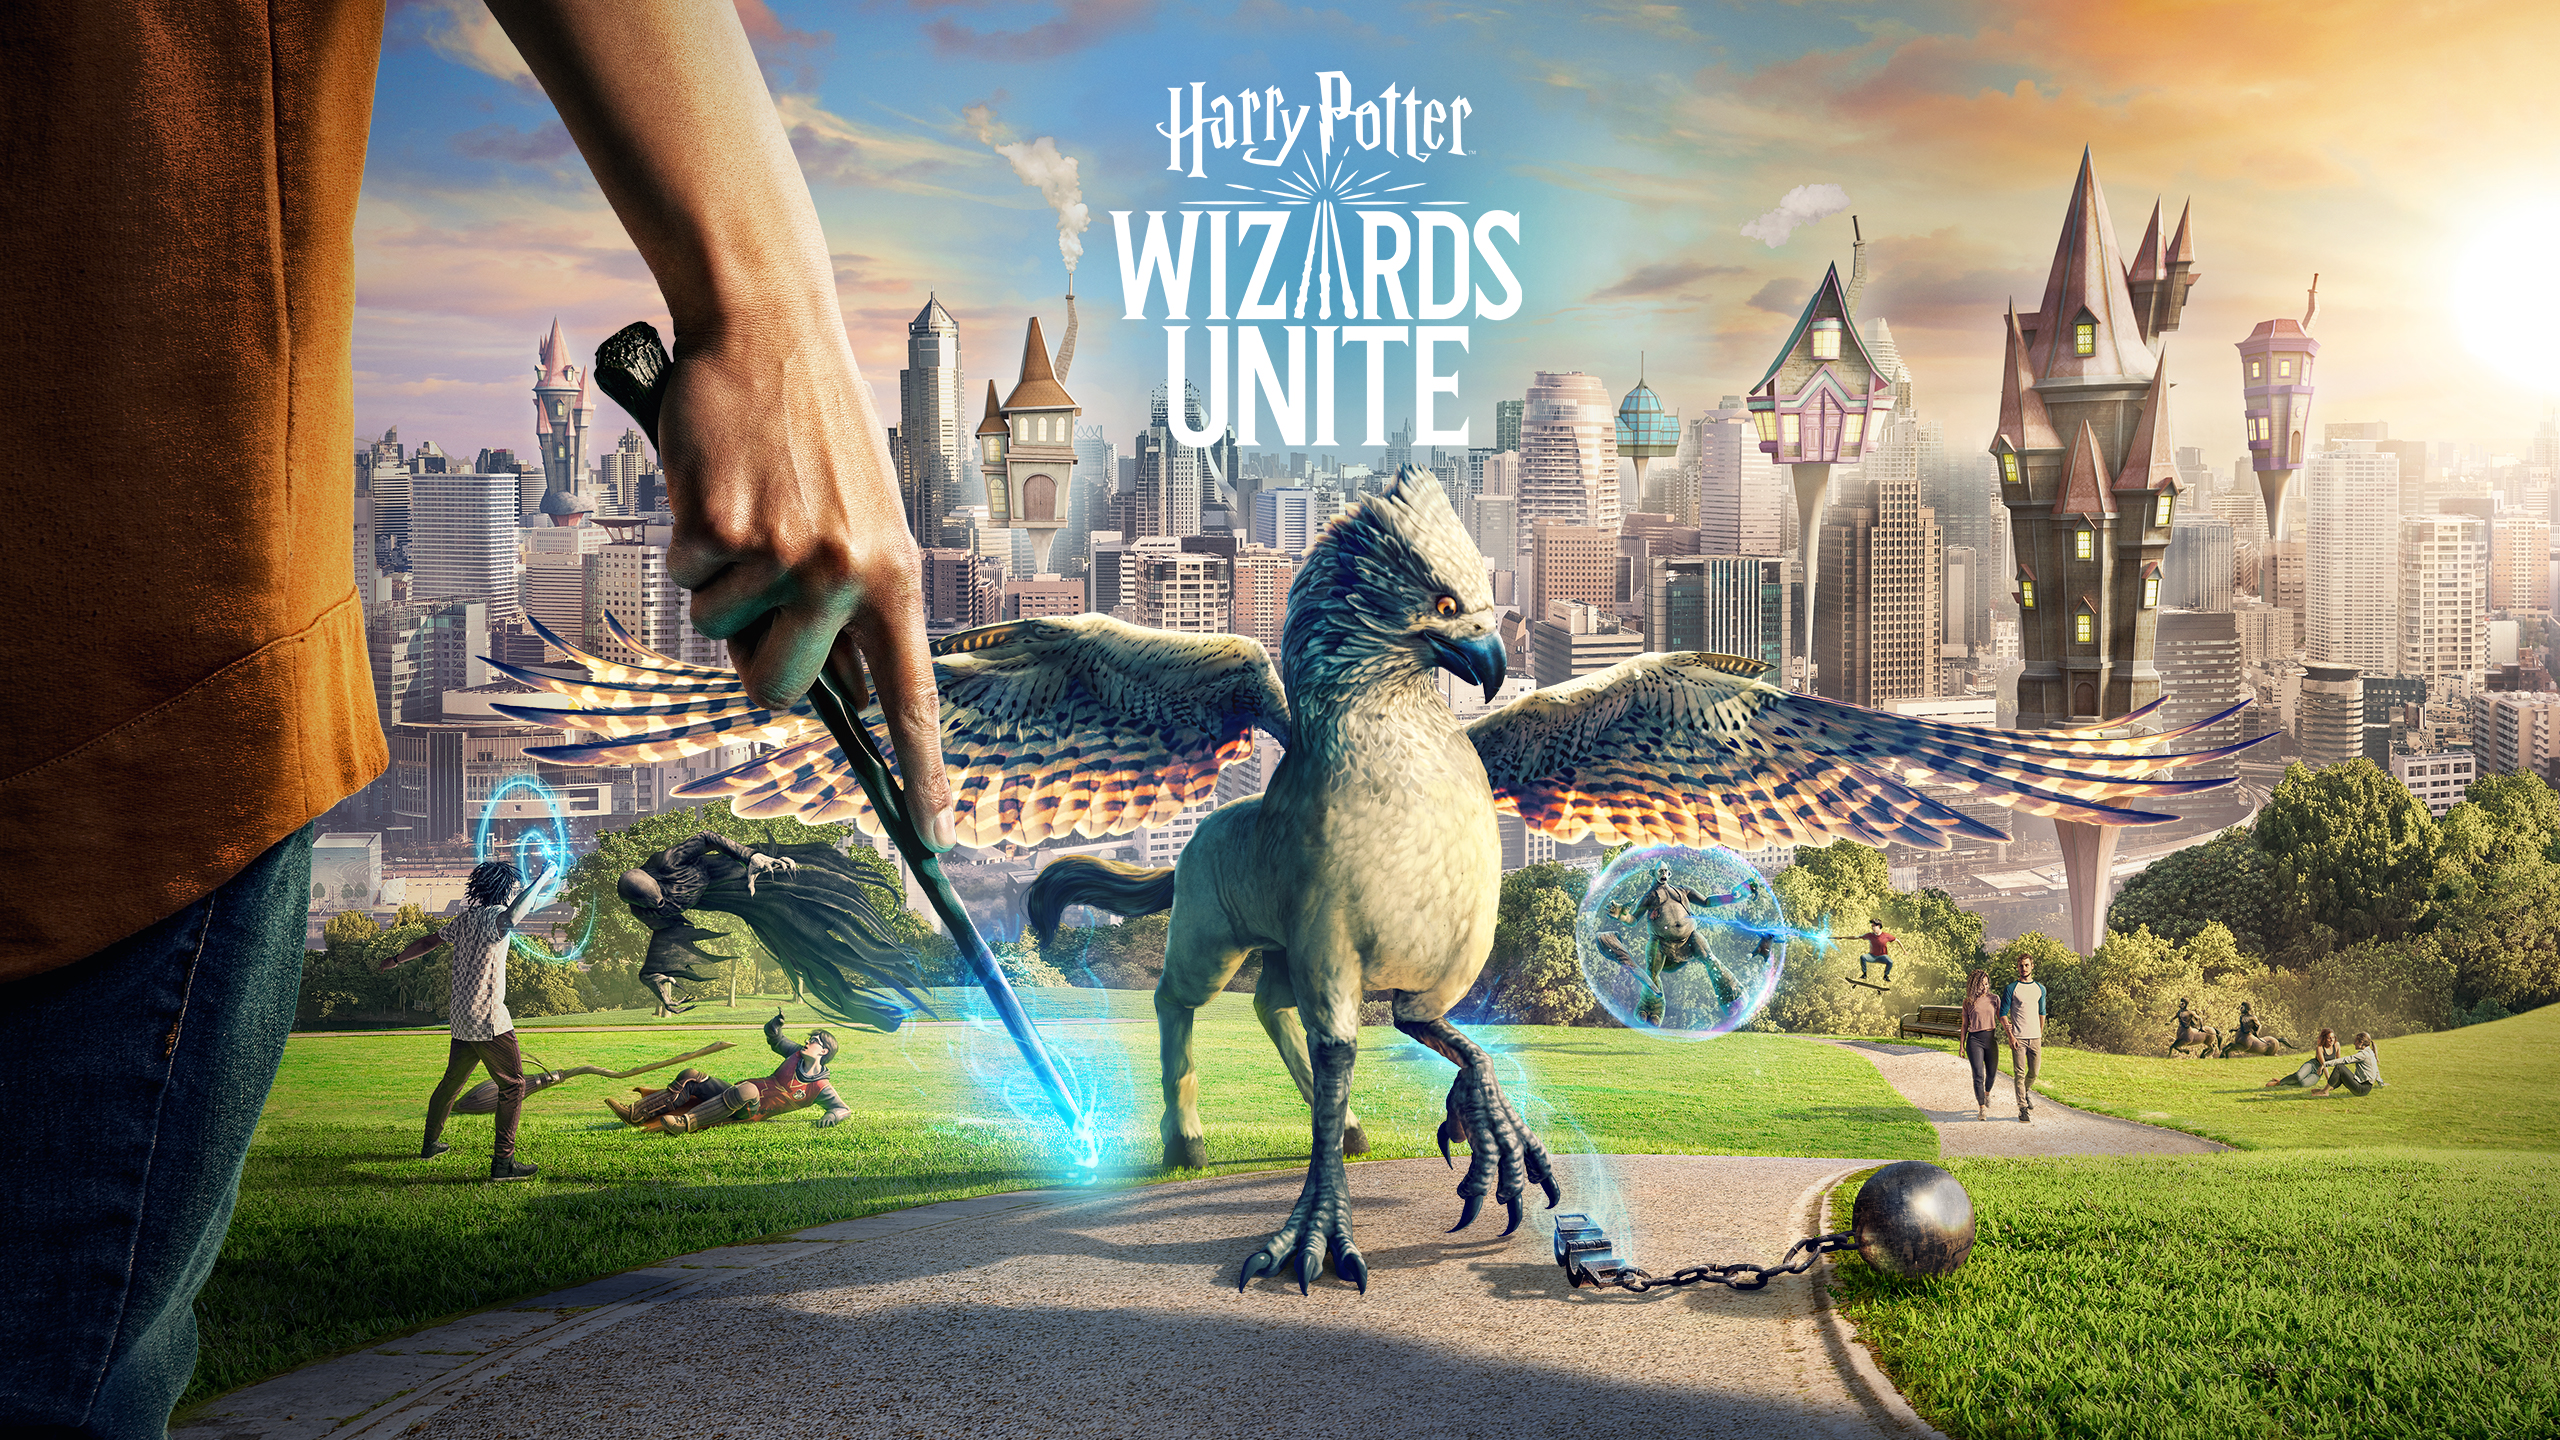 Descargar fondos de escritorio de Harry Potter: Wizards Unite HD